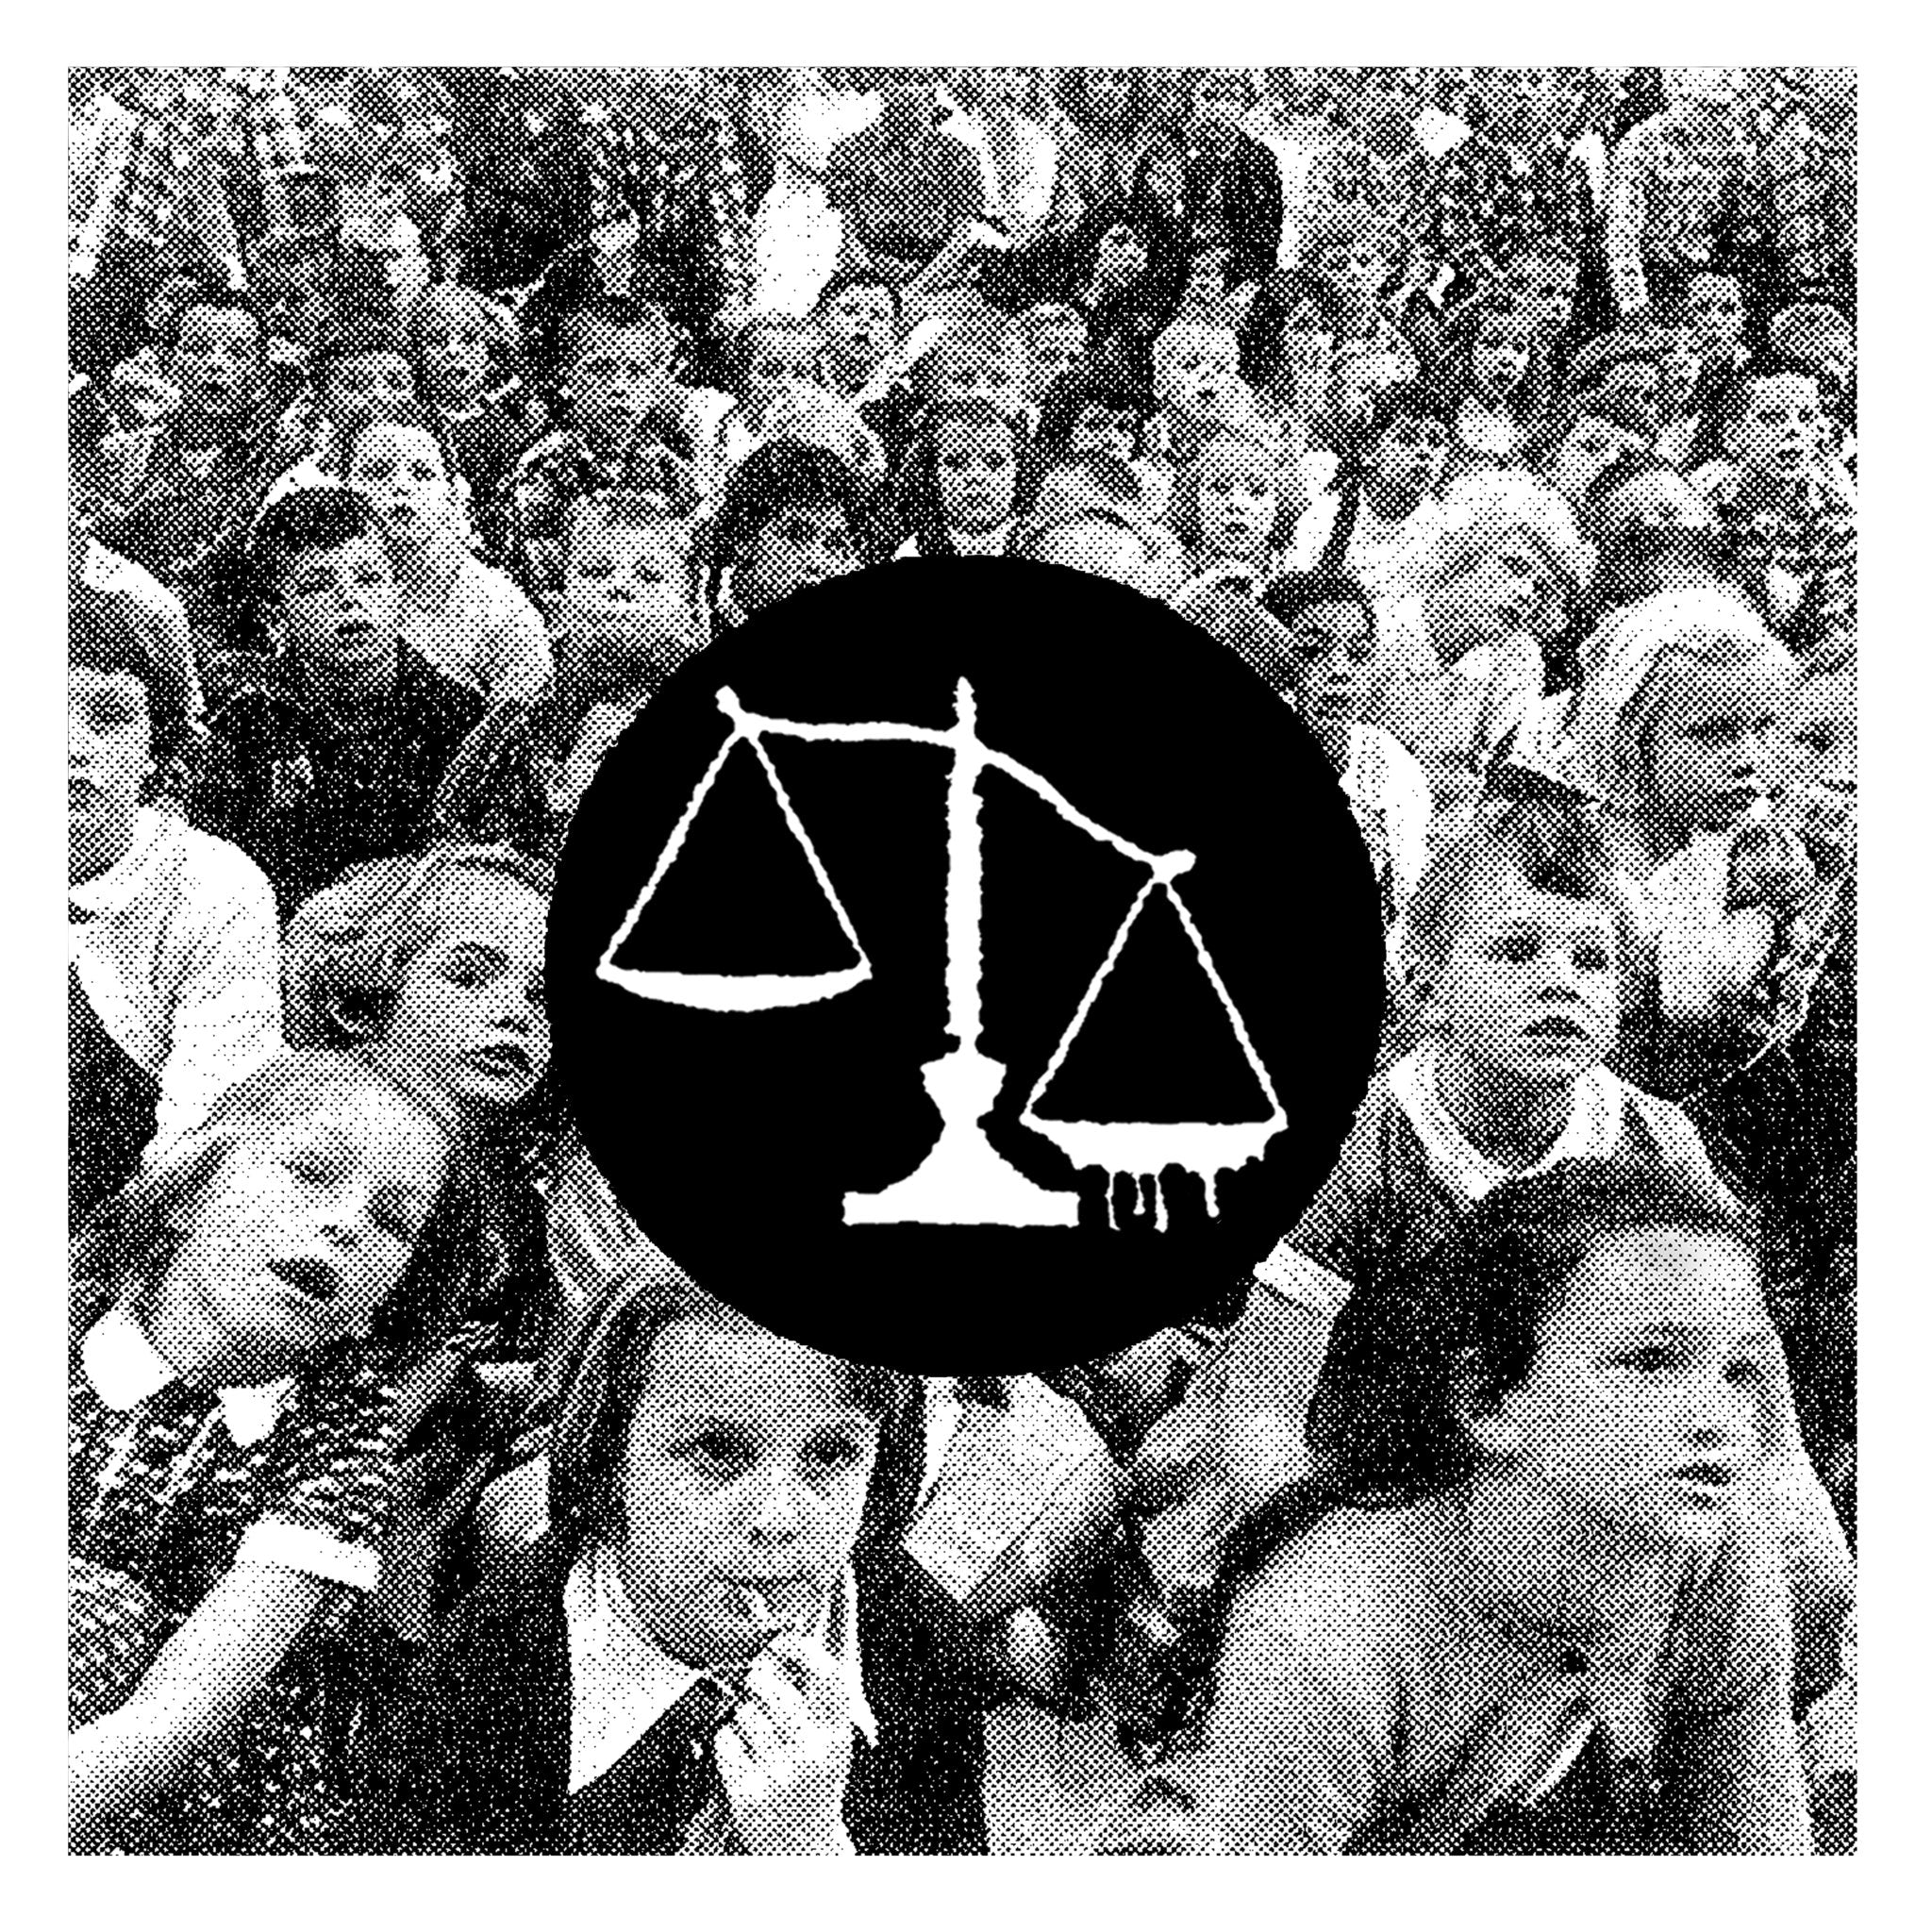 REGIONAL JUSTICE CENTER - KKK TATTOO Vinyl 7"